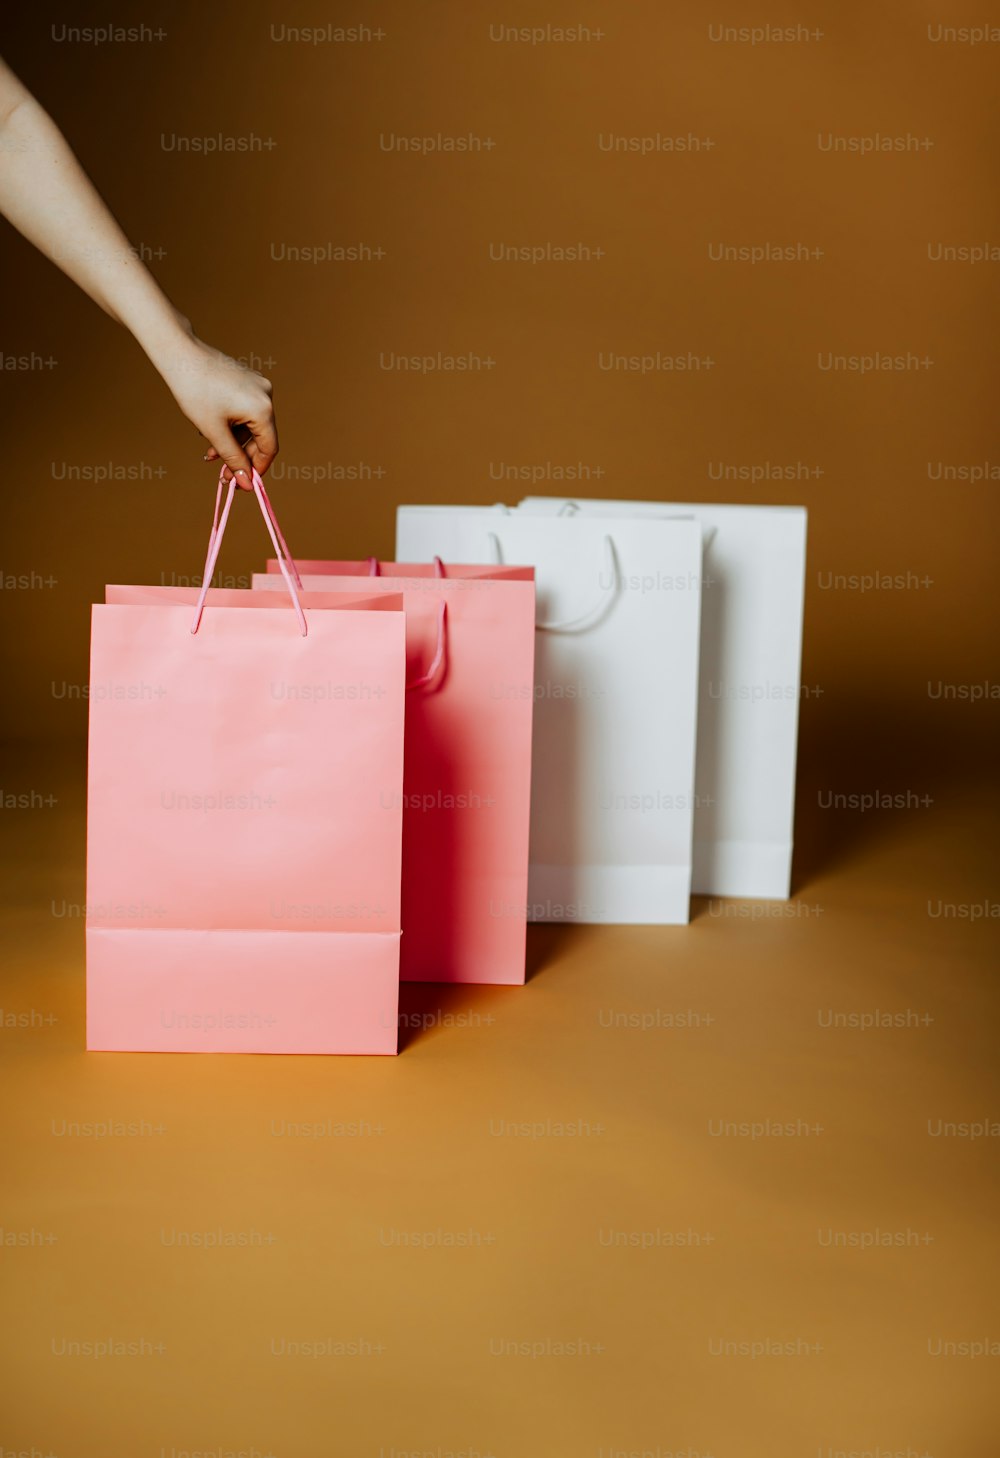 흰색 쇼핑백 3개 앞에 분홍색 쇼핑백을 들고 있는 사람